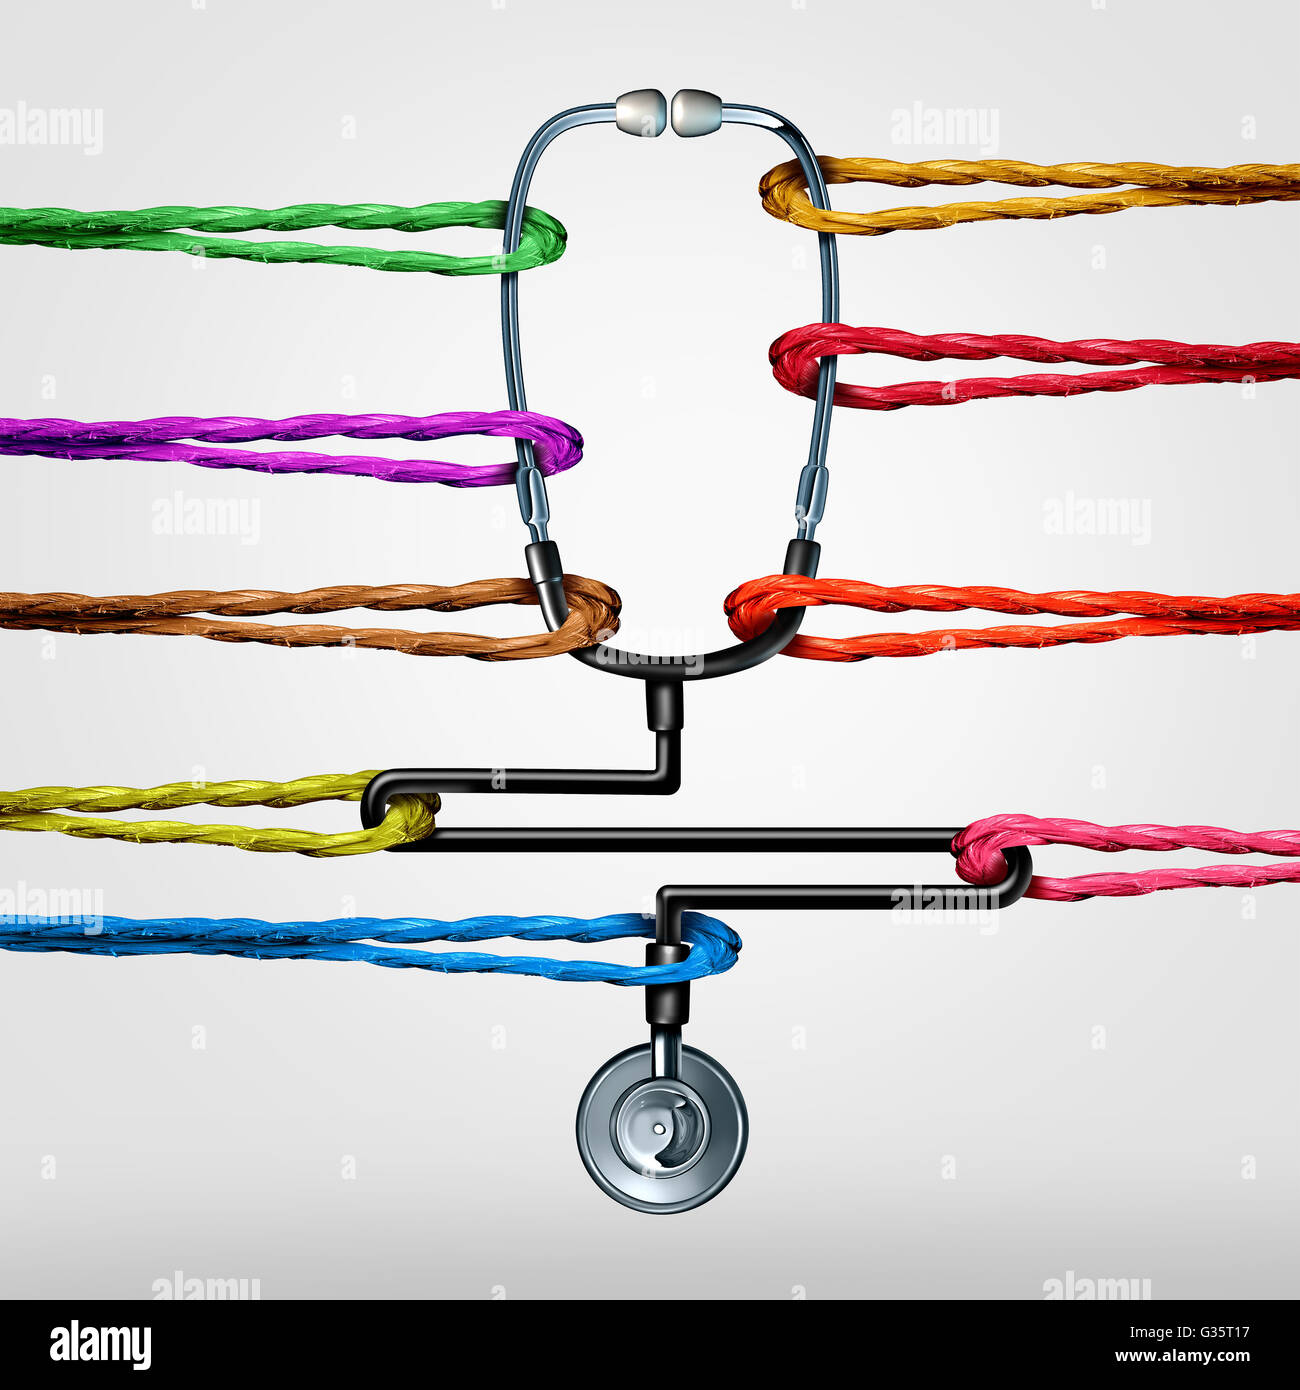 L'appui des soins de santé communautaires en tant que médecin stéthoscope tiré par des cordes de couleurs différentes comme une métaphore pour la médecine ou médecine Banque D'Images